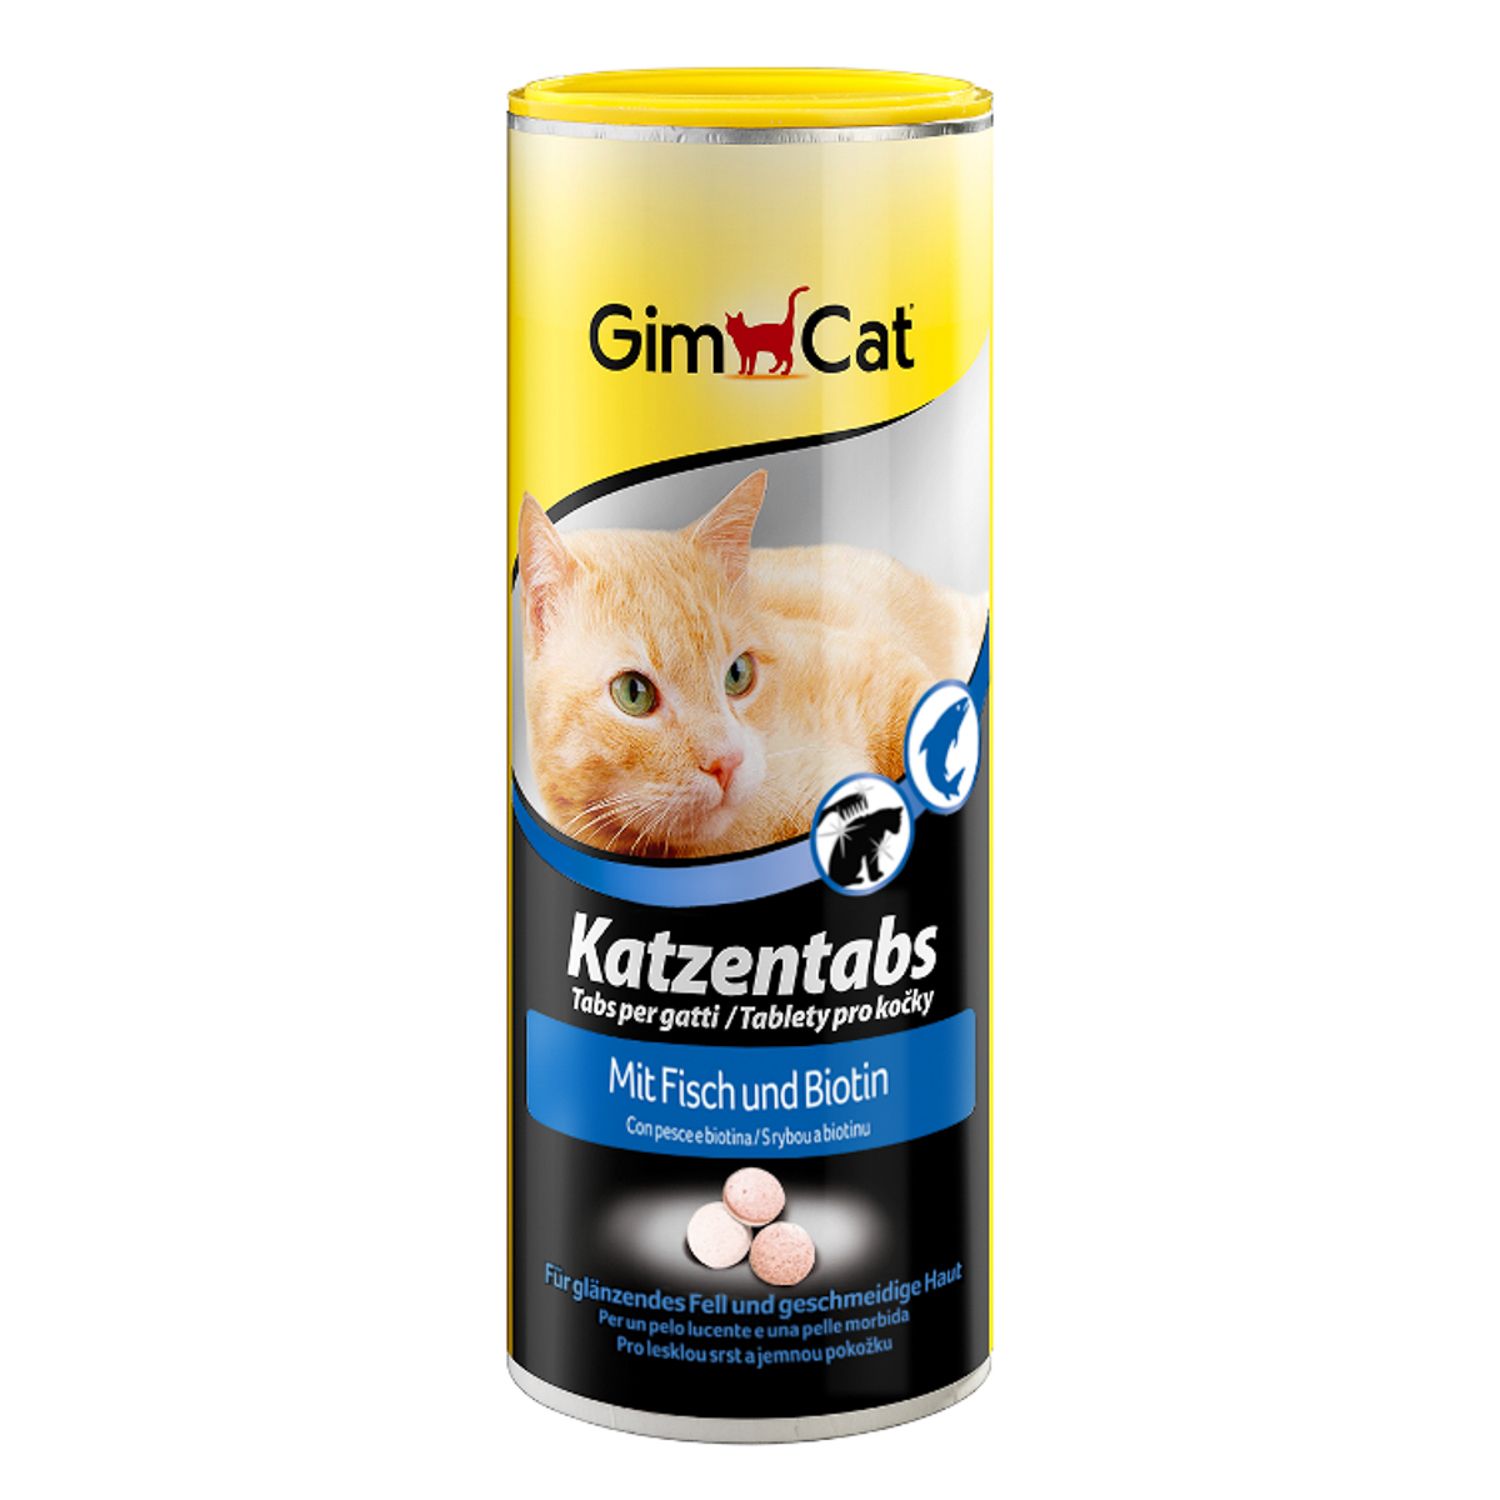 GimCat Katzentabs витаминная добавка Рыба для кошек 710 шт 1